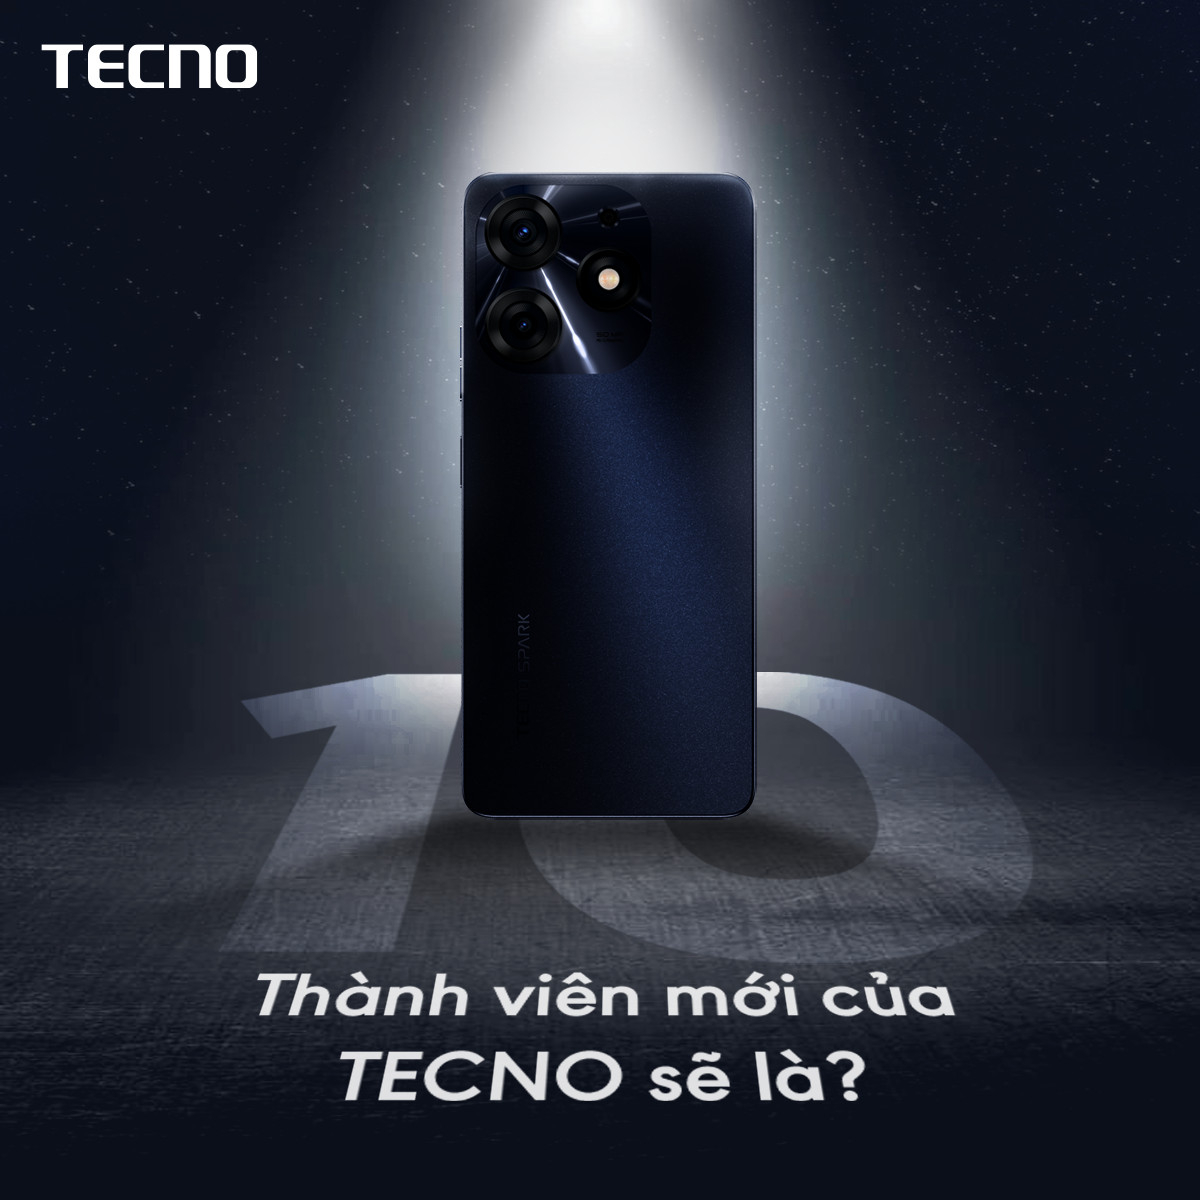 TECNO nhắm đến thị trường giới trẻ Việt với dòng Spark 10 Series ra mắt 19h ngày 11/04 - Ảnh 1.